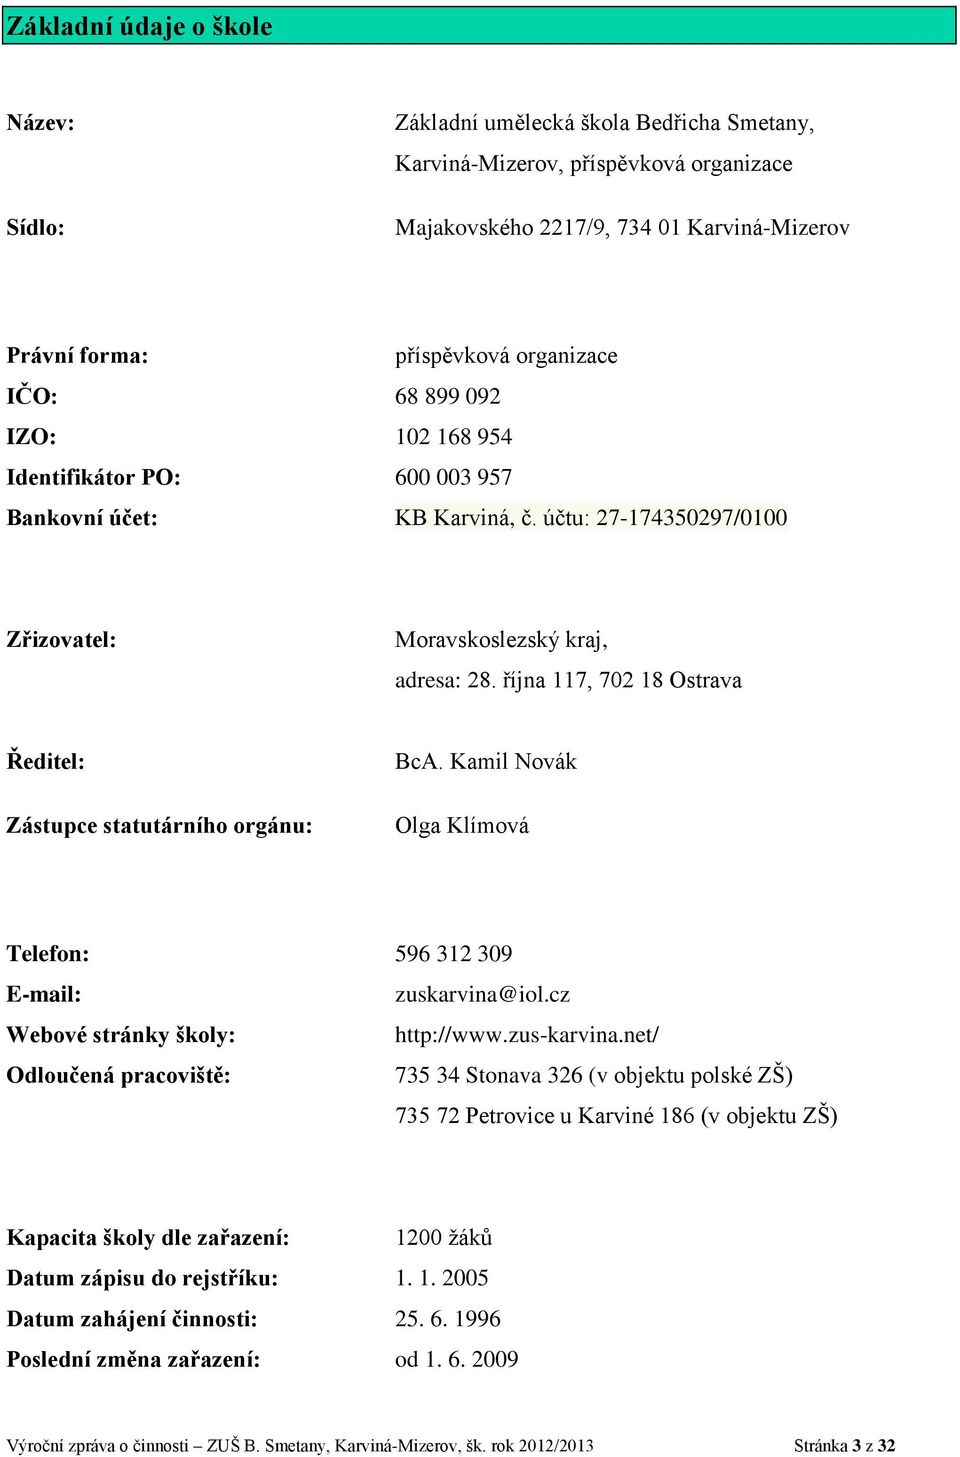 října 117, 702 18 Ostrava Ředitel: Zástupce statutárního orgánu: BcA. Kamil Novák Olga Klímová Telefon: 596 312 309 E-mail: zuskarvina@iol.cz Webové stránky školy: http://www.zus-karvina.